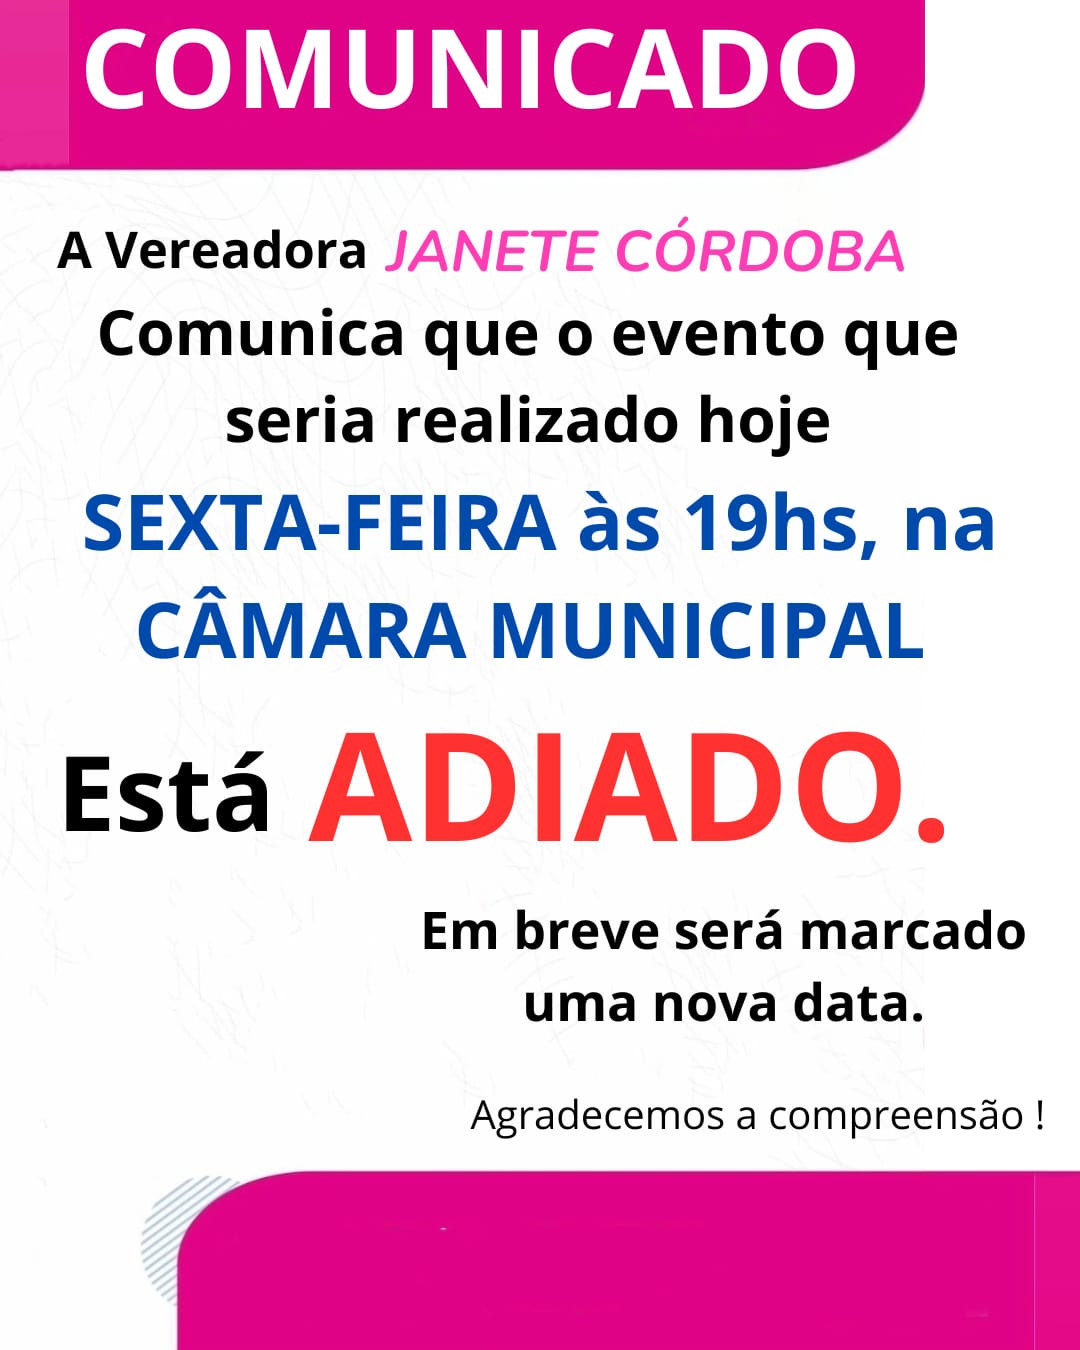 Vereadora Janete Córdoba comunica adiamento de evento que seria realizado nesta sexta-feira em Amambai